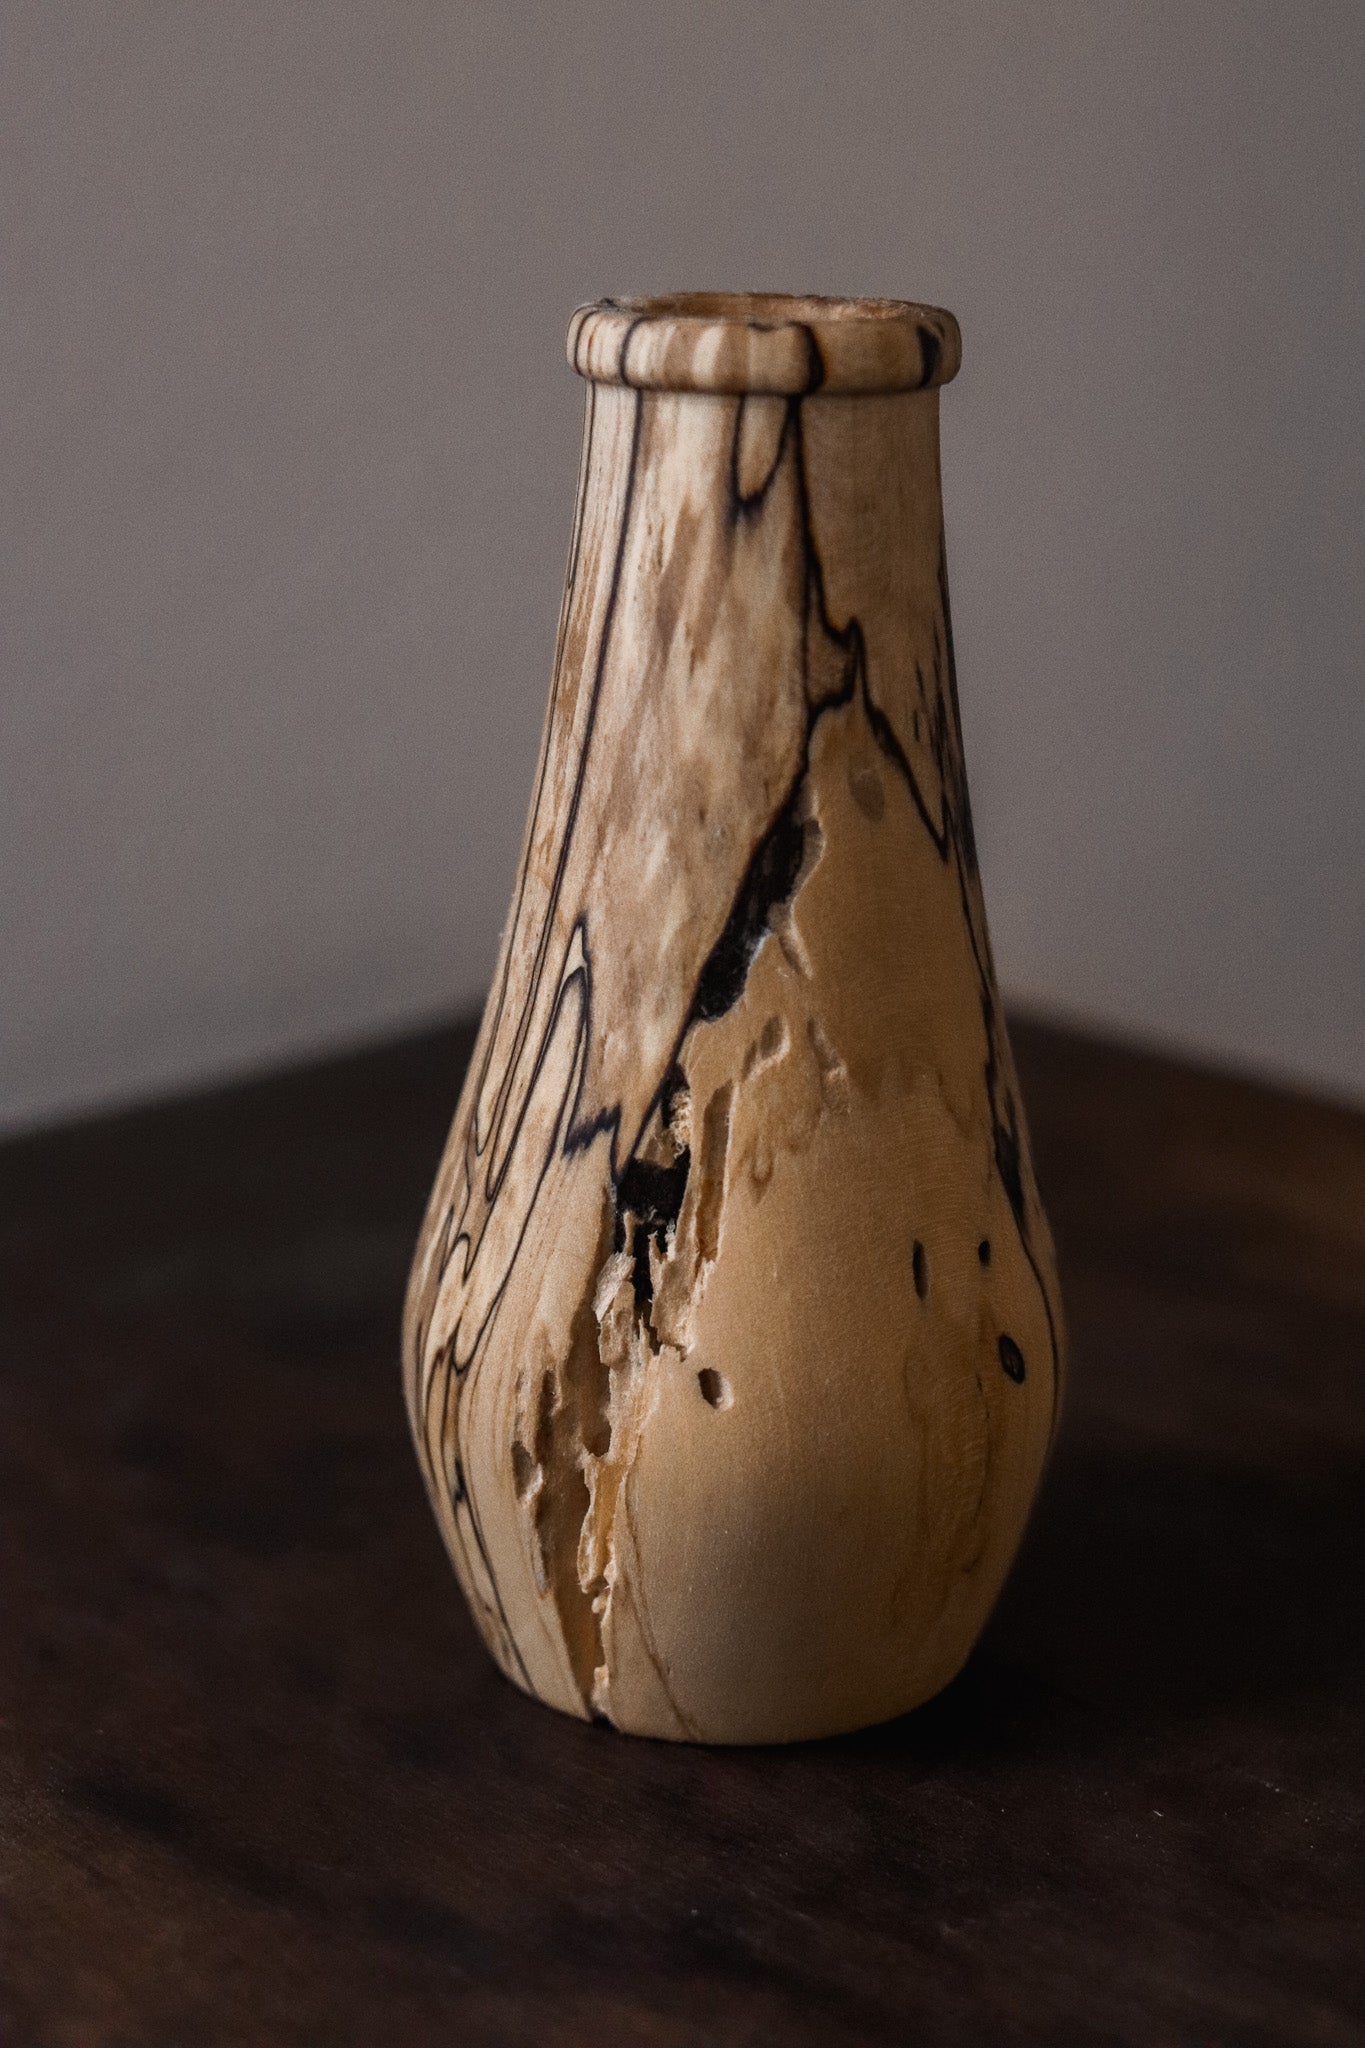 Hand-turned Miniature Vases - Batch 1 - Vase 03